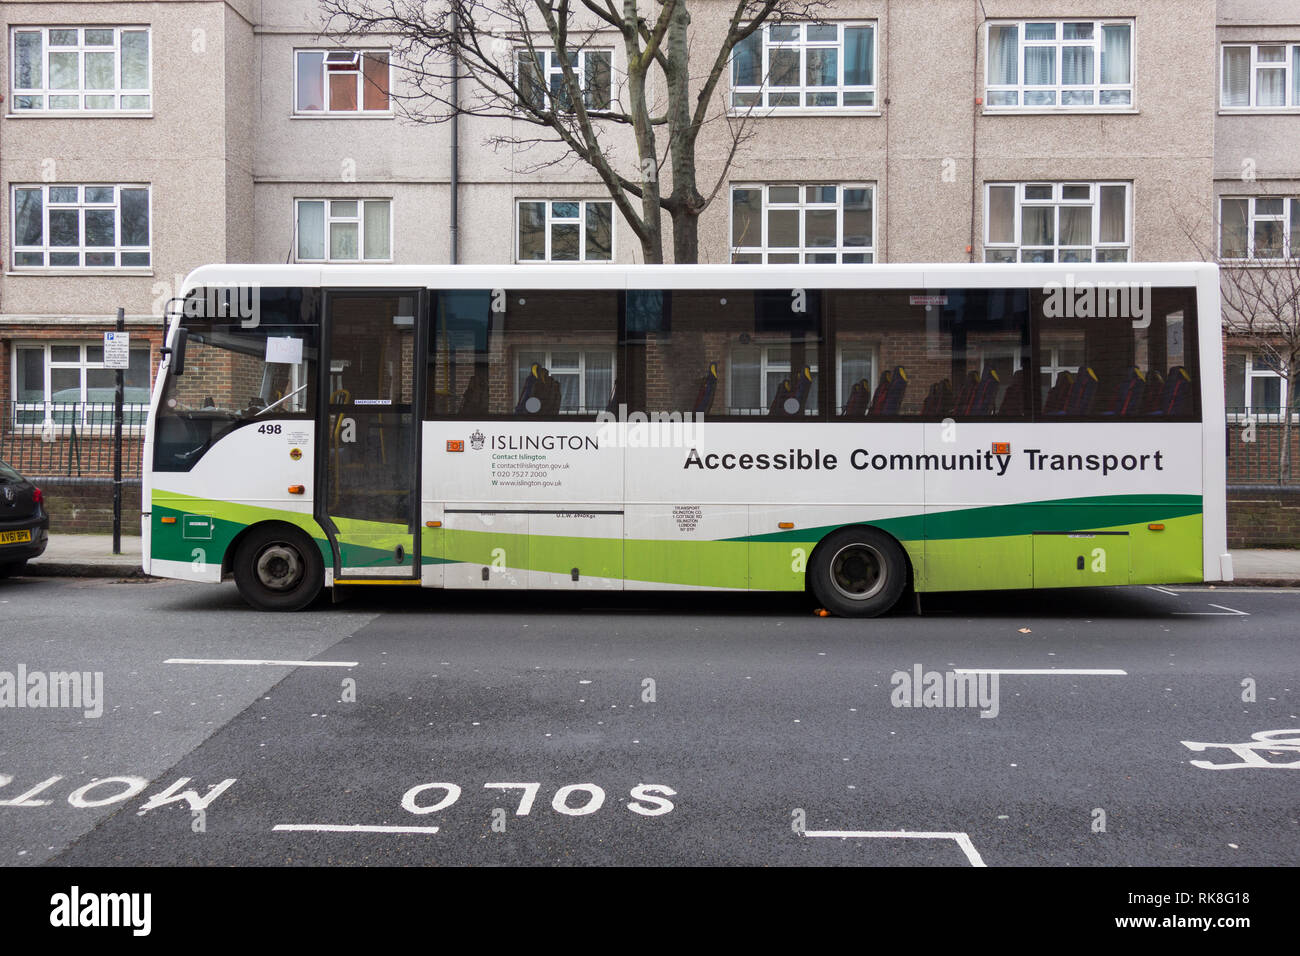 El bus de transporte comunitario accesibles Islington, Londres, Reino Unido. Foto de stock